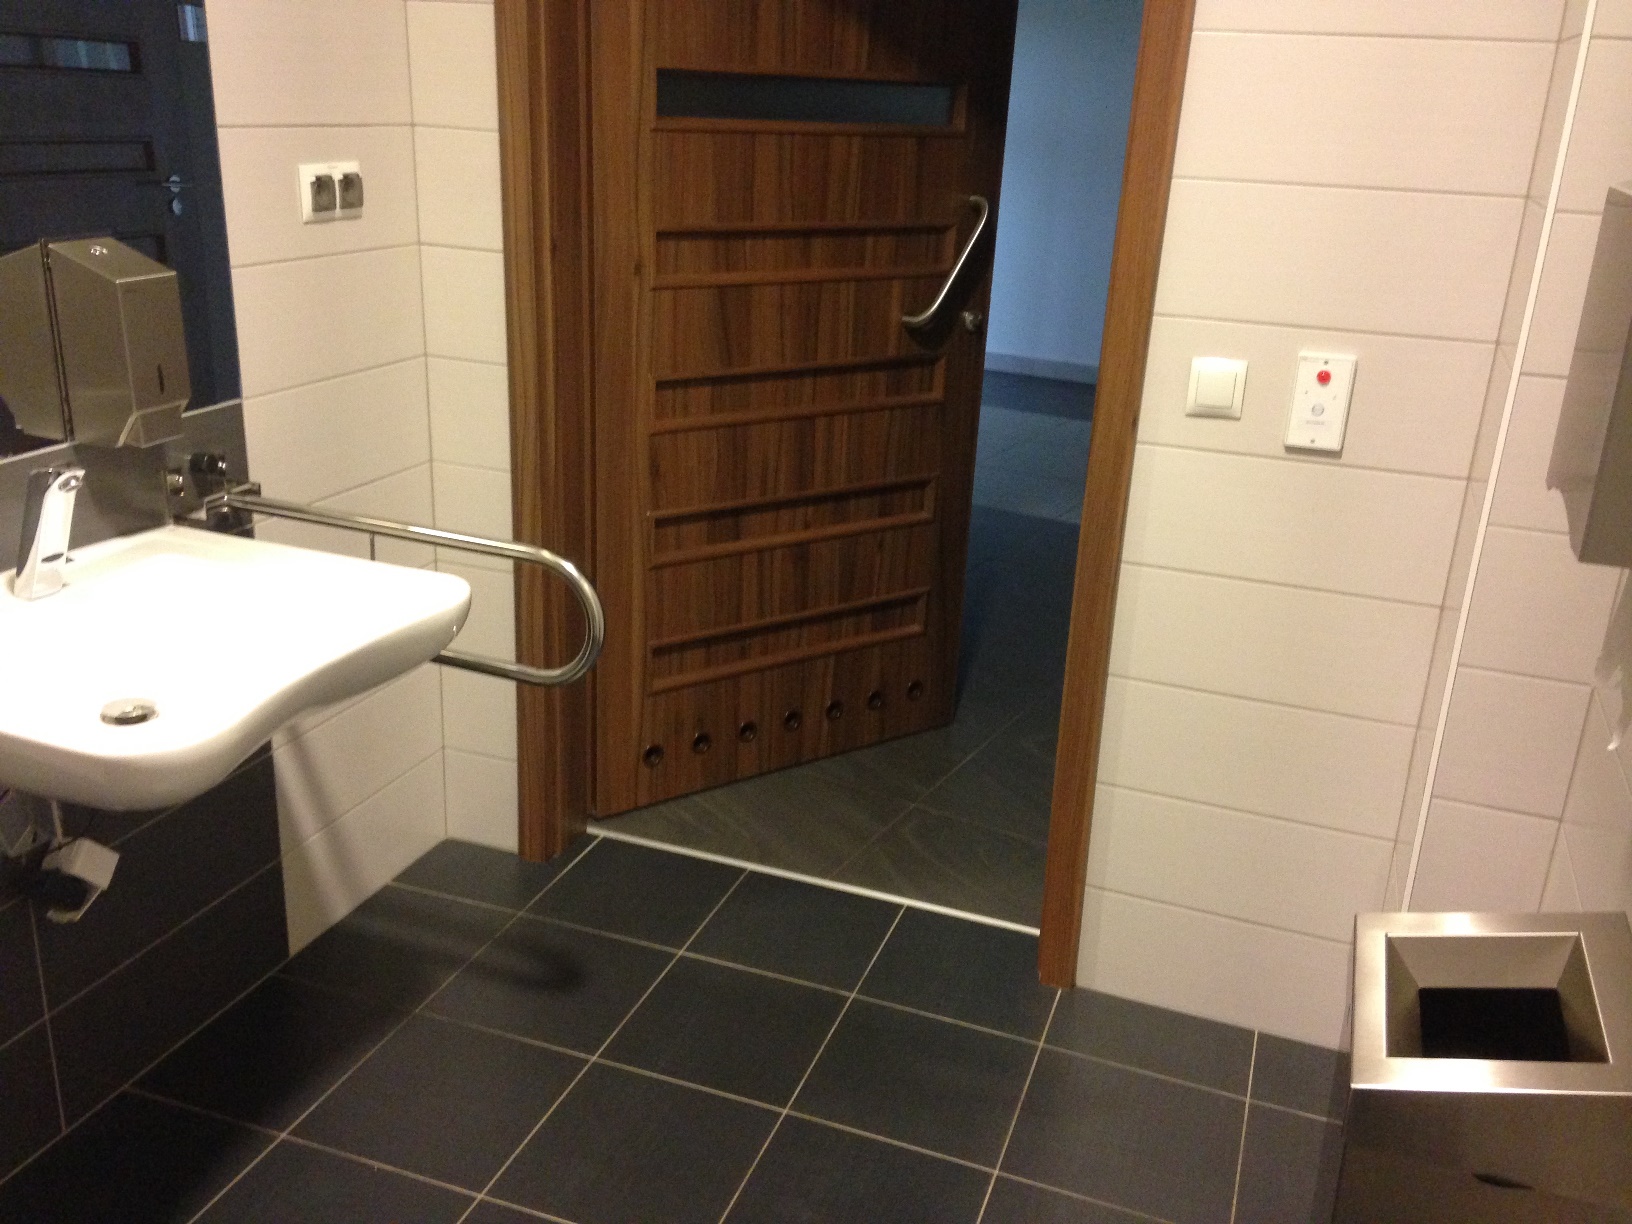 Wejście do toalety, przestrzeń pomiędzy umywalką o metalowym dozownikiem i koszem - 118 cm